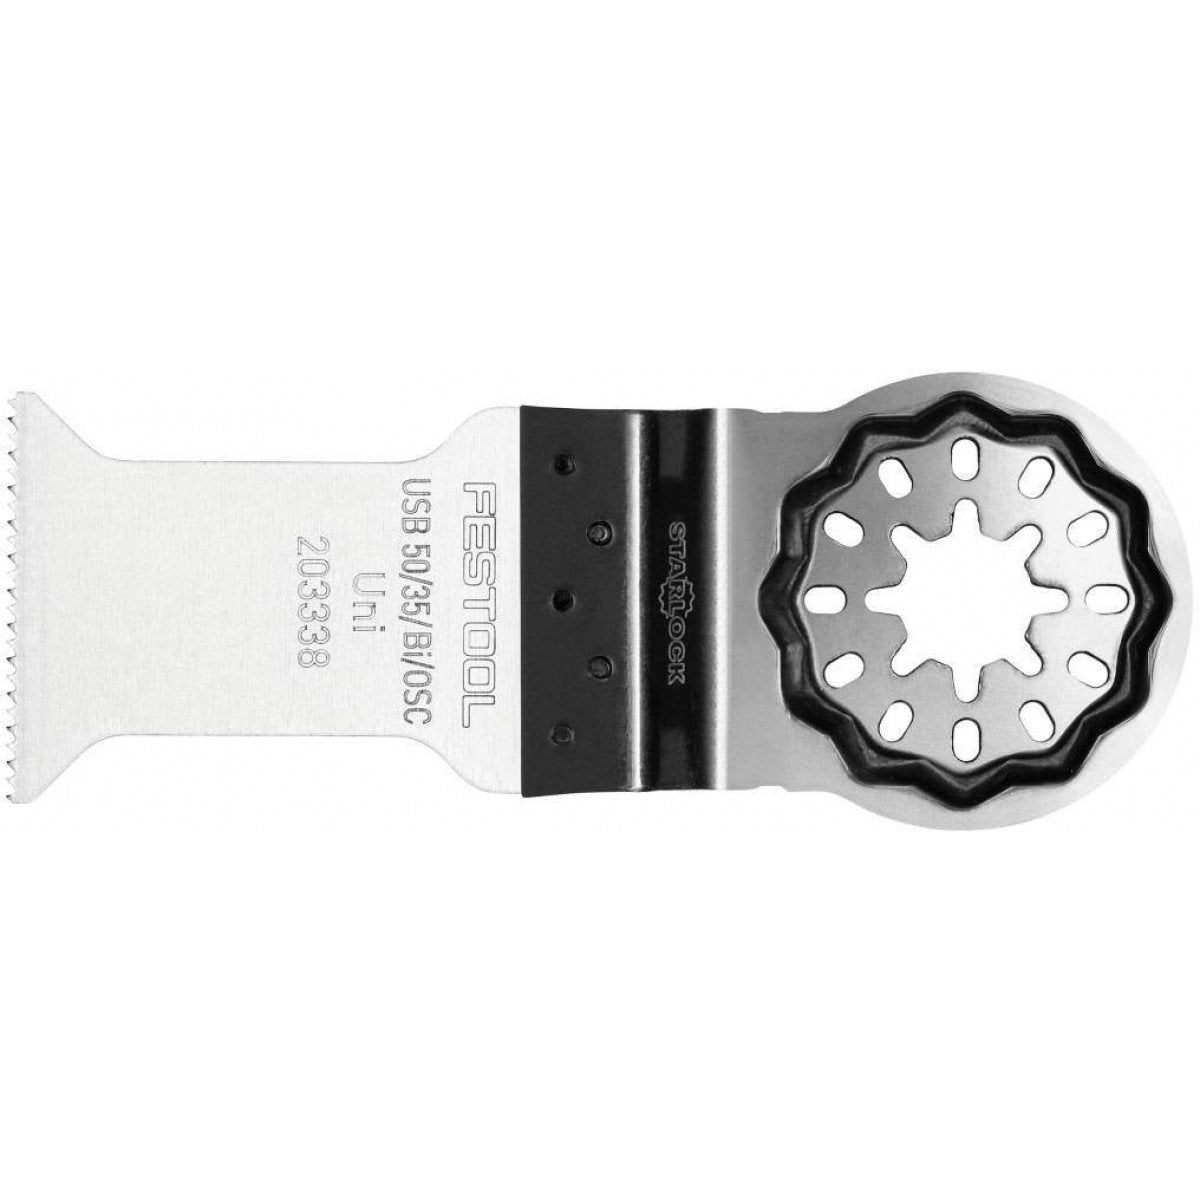 Festool 35mm Bimetal Straight Oscillating Tool Blade with Starlock Max for OSC 18 USB 50/35/Bi/OSC/5 203338